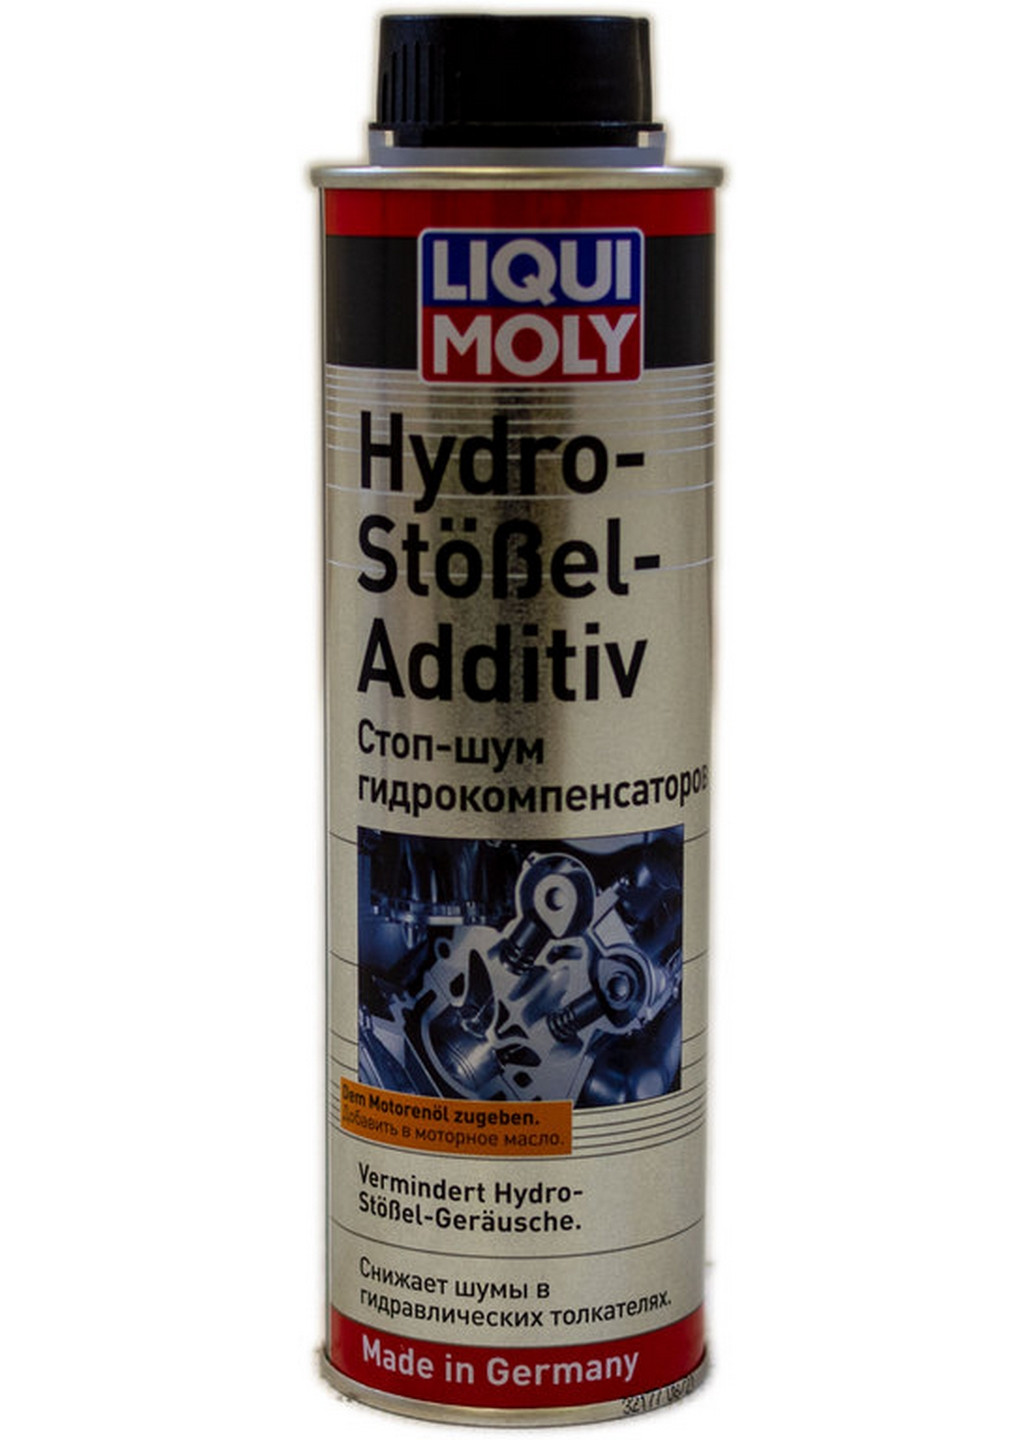 Присадка в моторне масло 300 мл Hudro-Stossel-Additiv (для усунення шуму гідрокомпенсаторів) 6х18х5,5 см Liqui Moly (263425449)